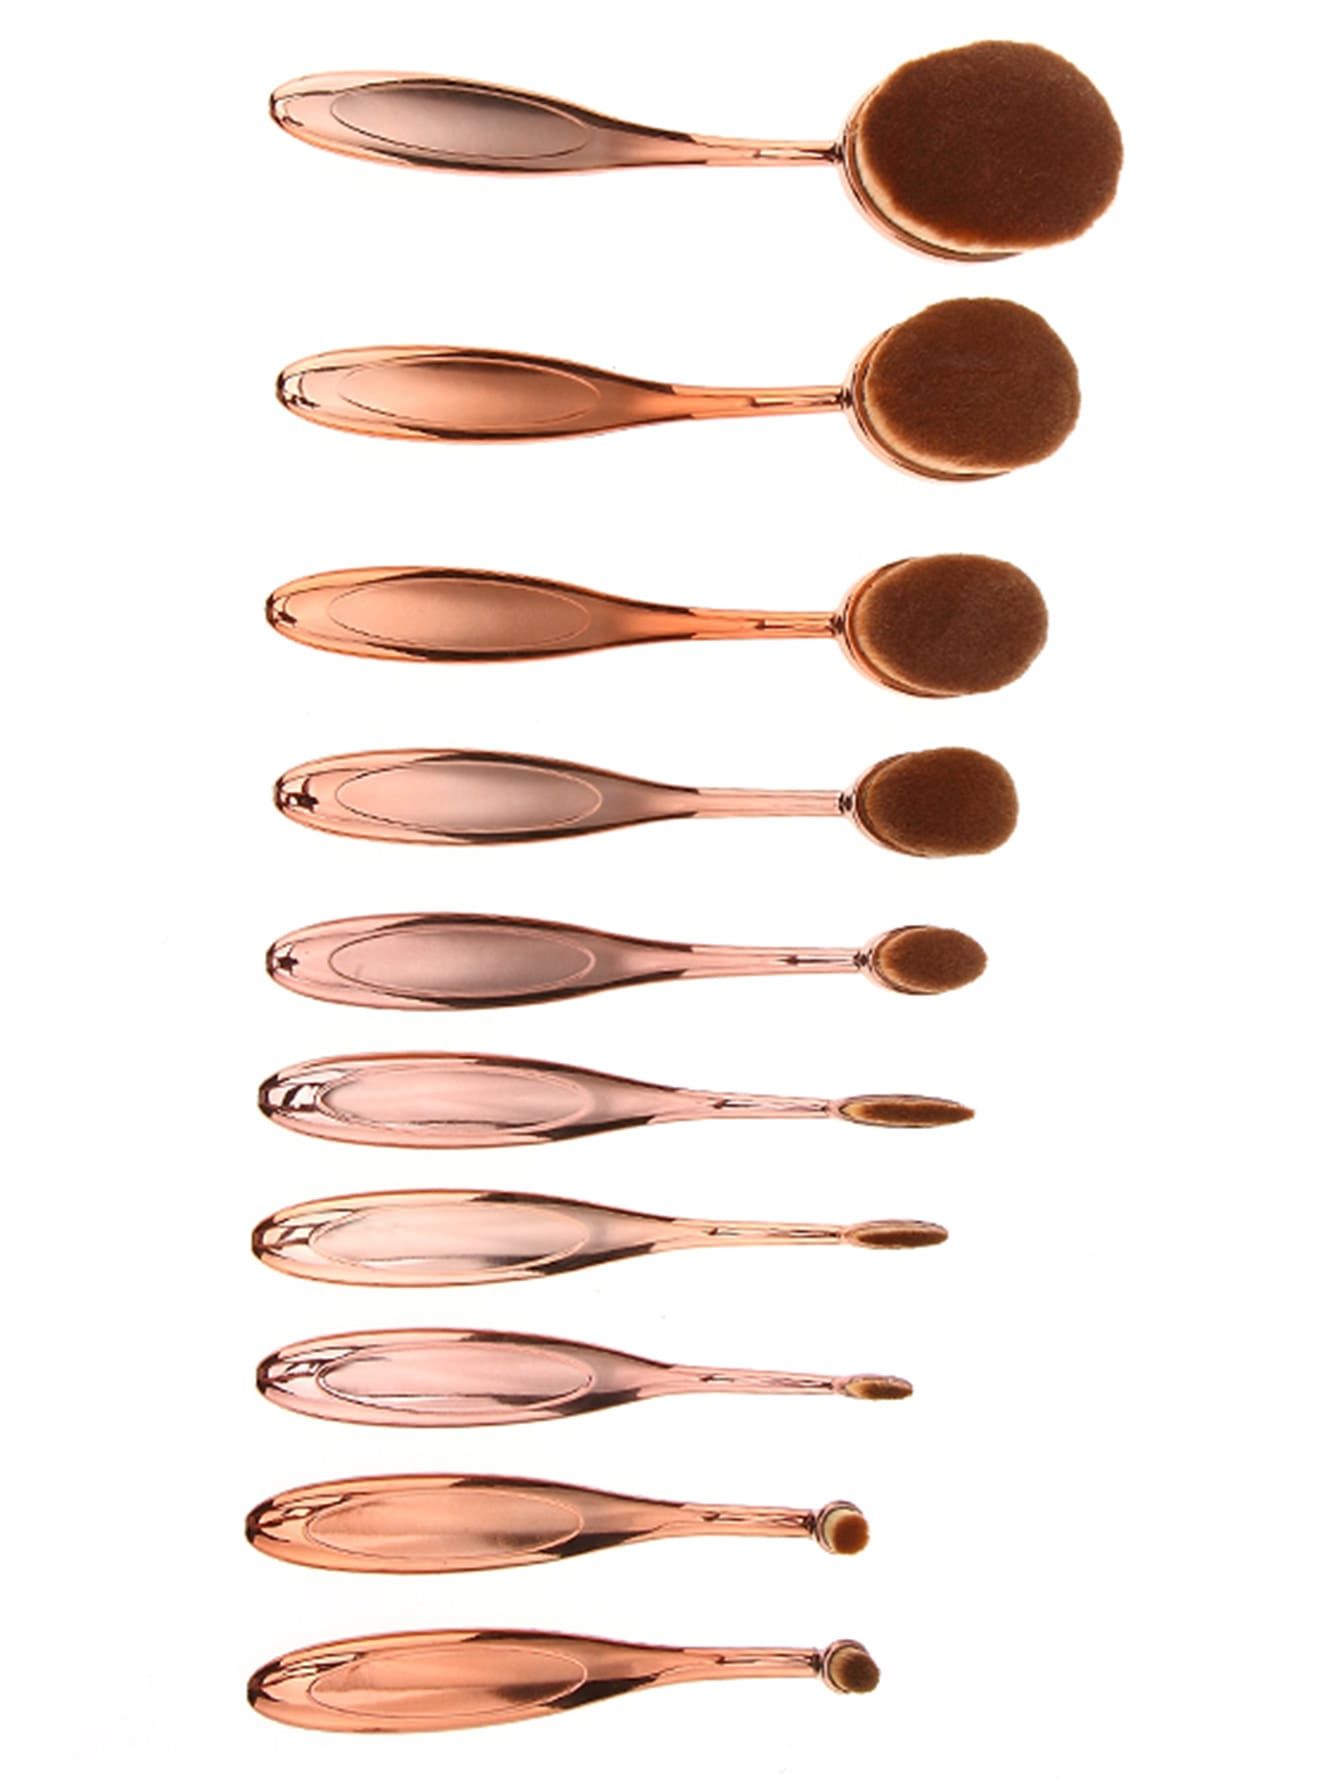 Rose Gold Oval Makeup Brush Set 10PCS | ROMWE